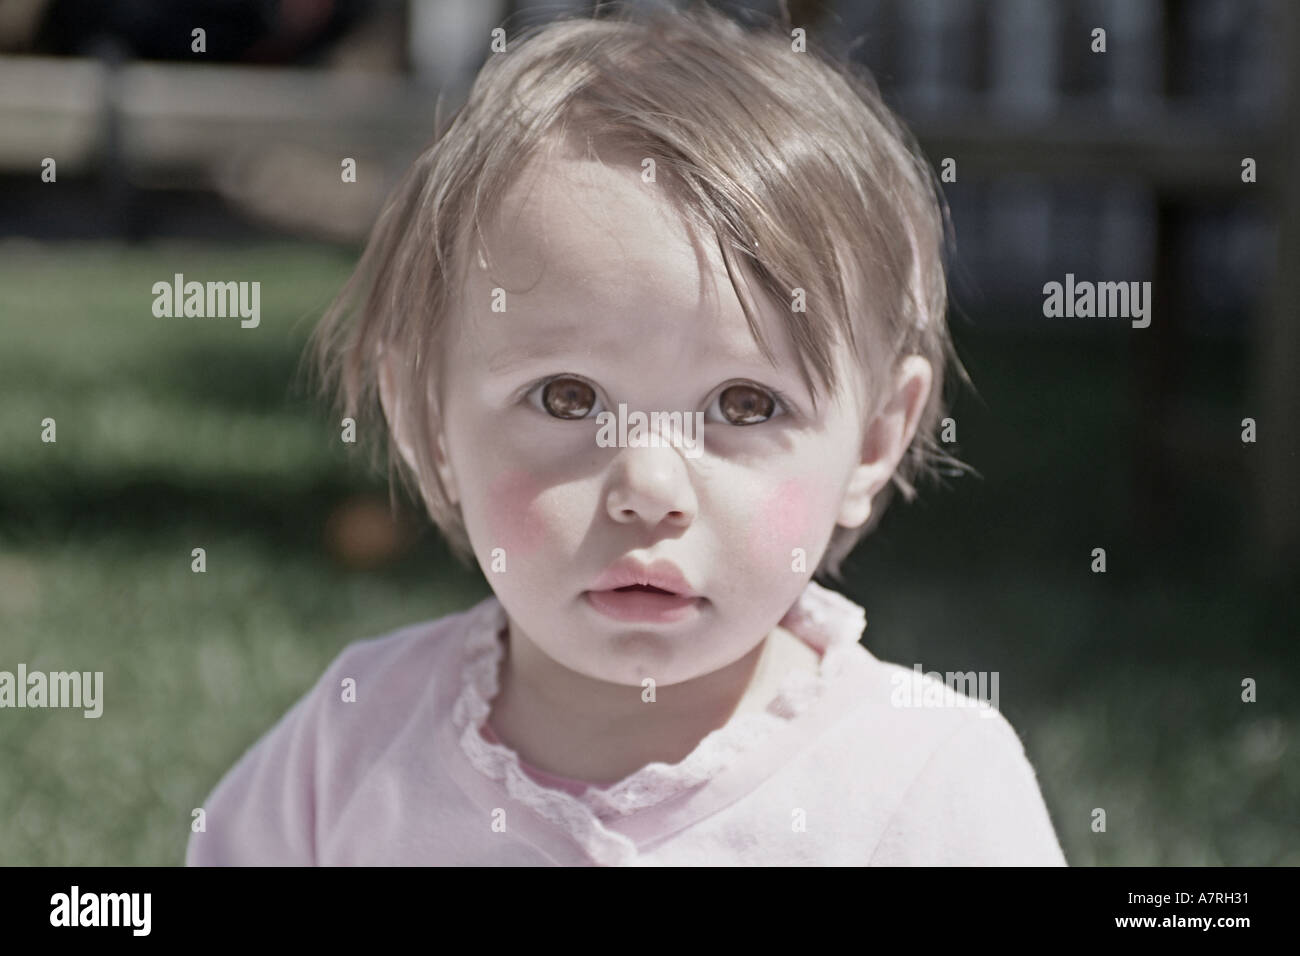 Kleines Mädchen, das aussieht wie Puppe eingefärbte Bild. Stockfoto